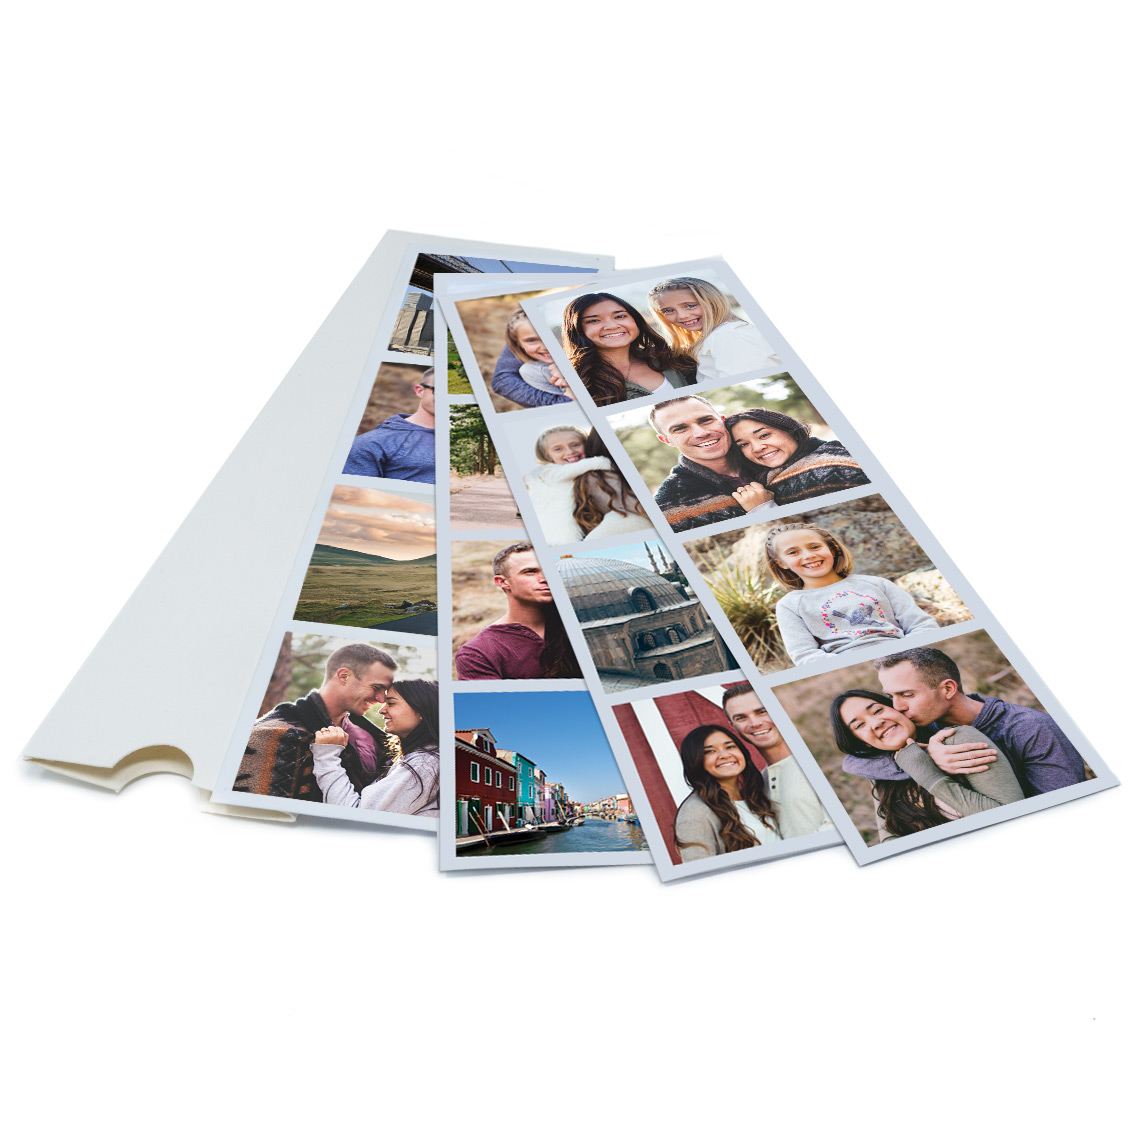 Offerta Lampo: 200 Stampe 13x18 - Carta fotografica Prestige HD a soli  17,99 euro